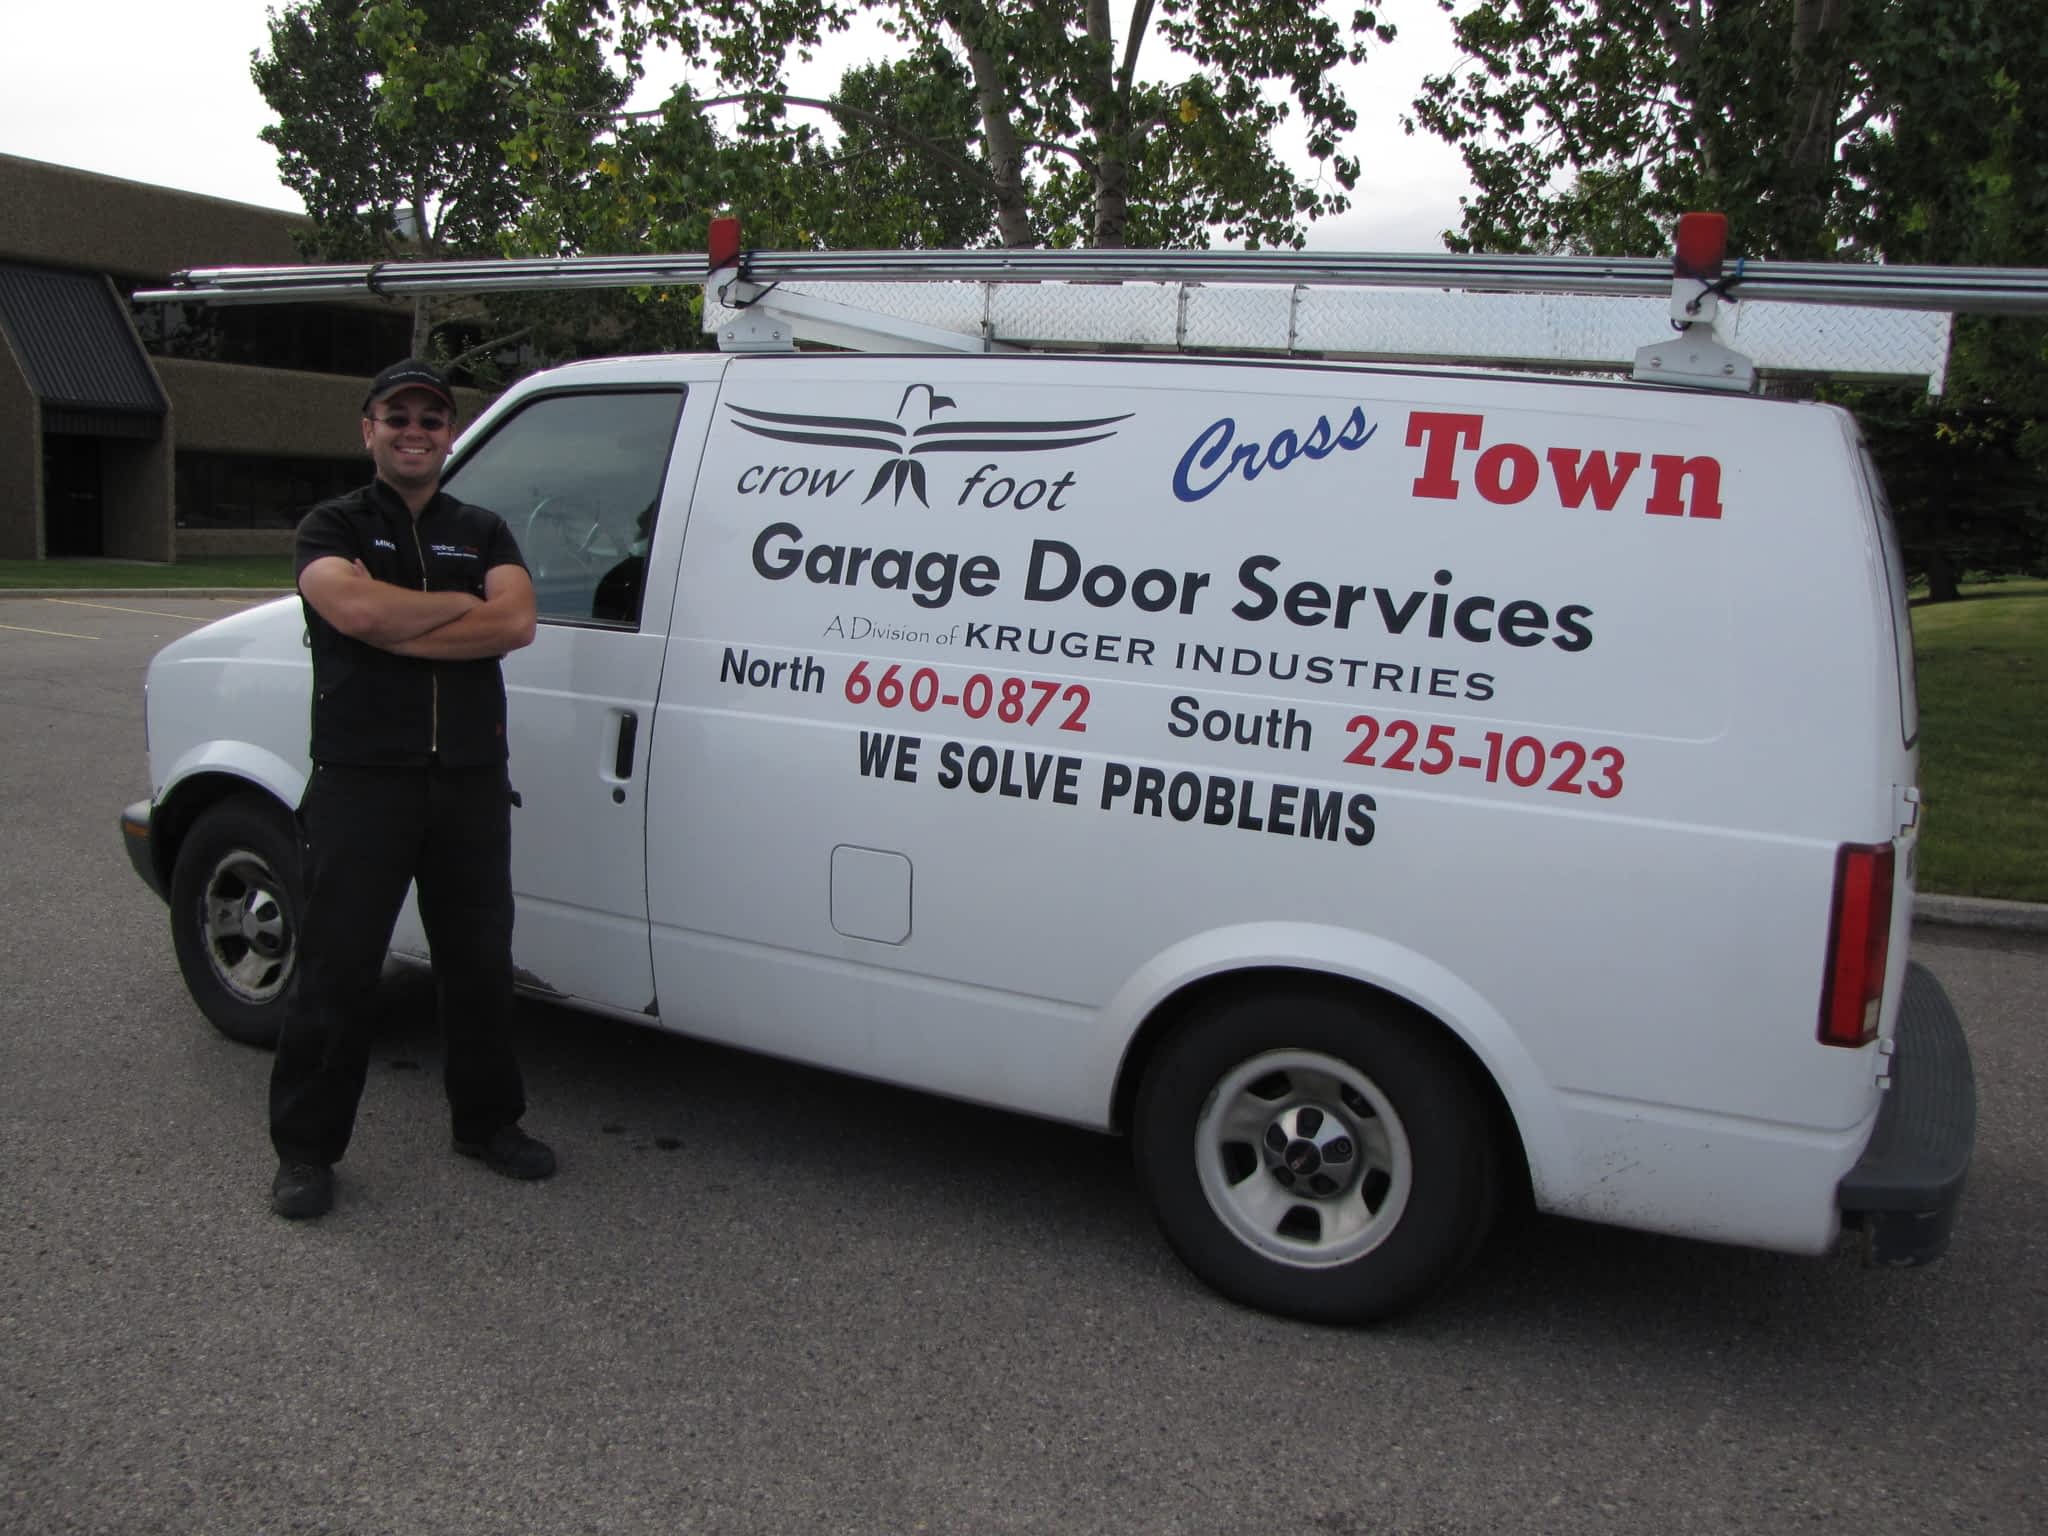 photo Crowfoot & Cross Town Garage Door Services